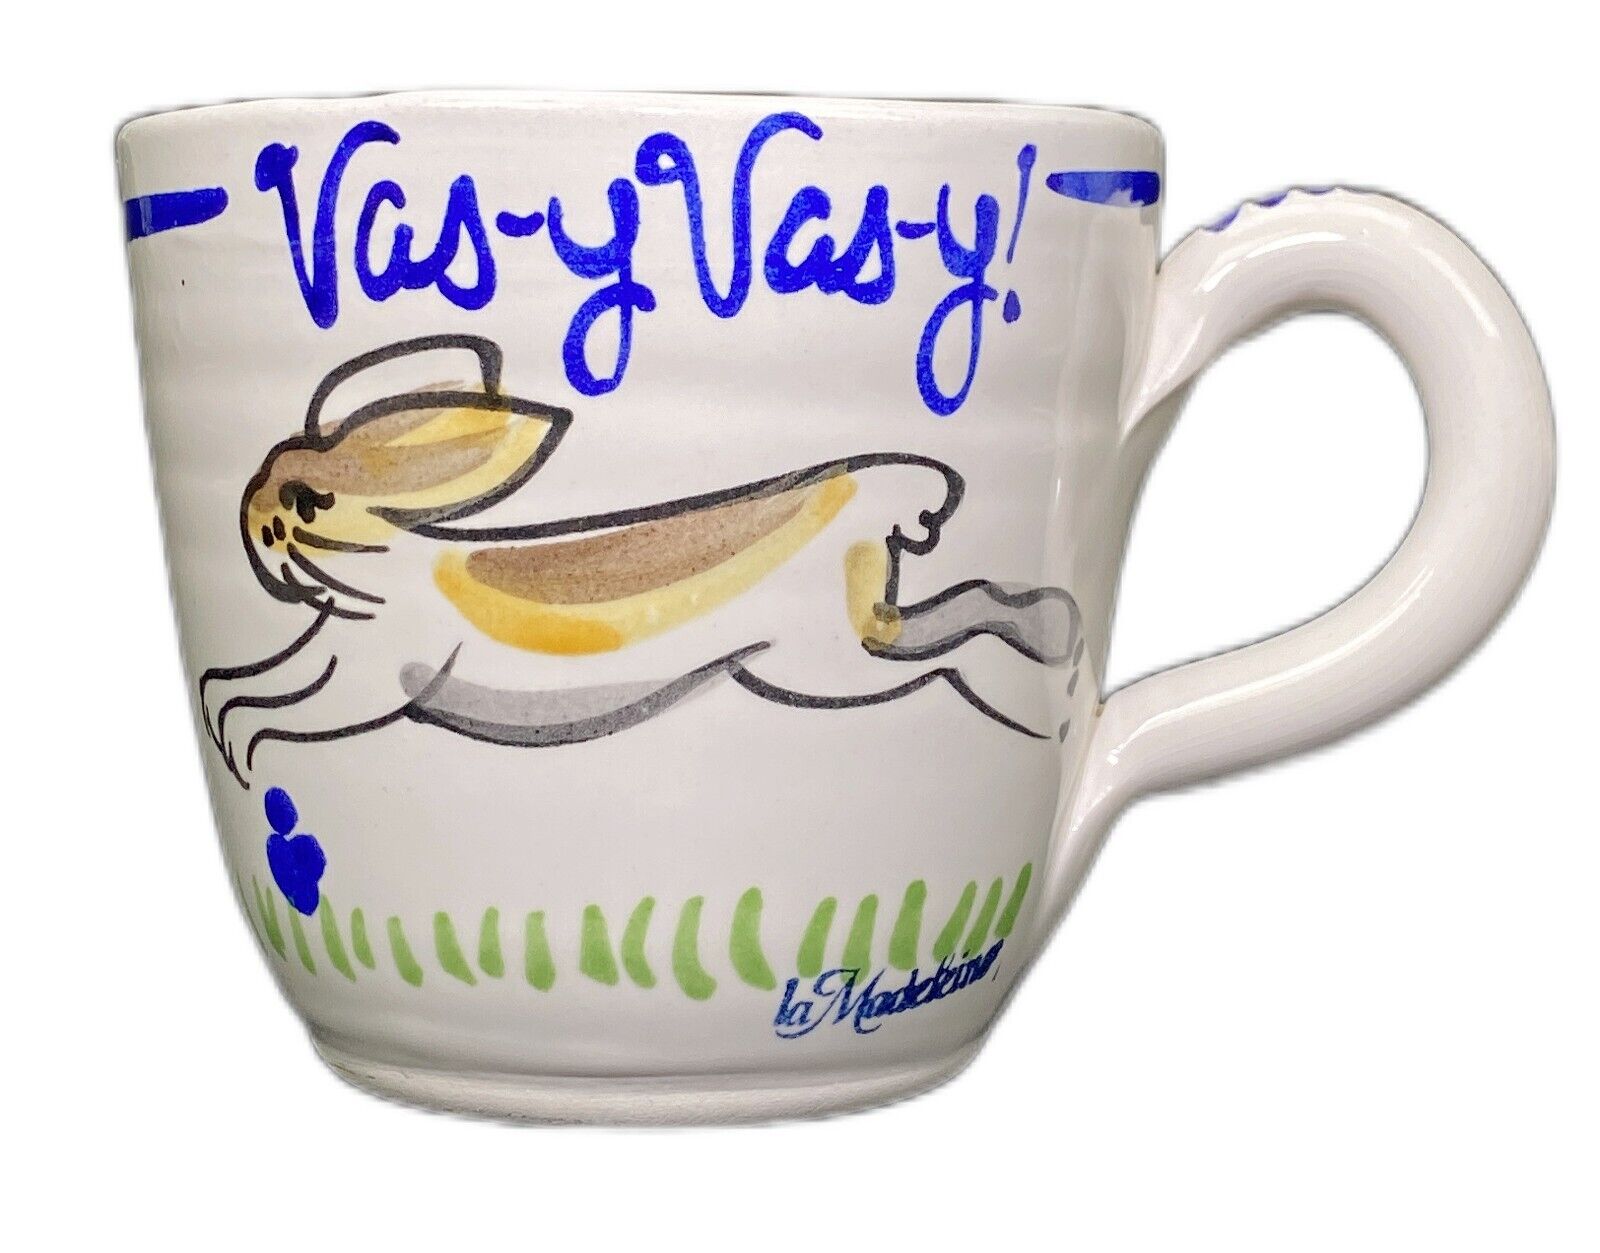 La Madeleine Oversized Cup Vas-y Vas-y Rabbit Hare Hurry Bunny Ceramic Mug